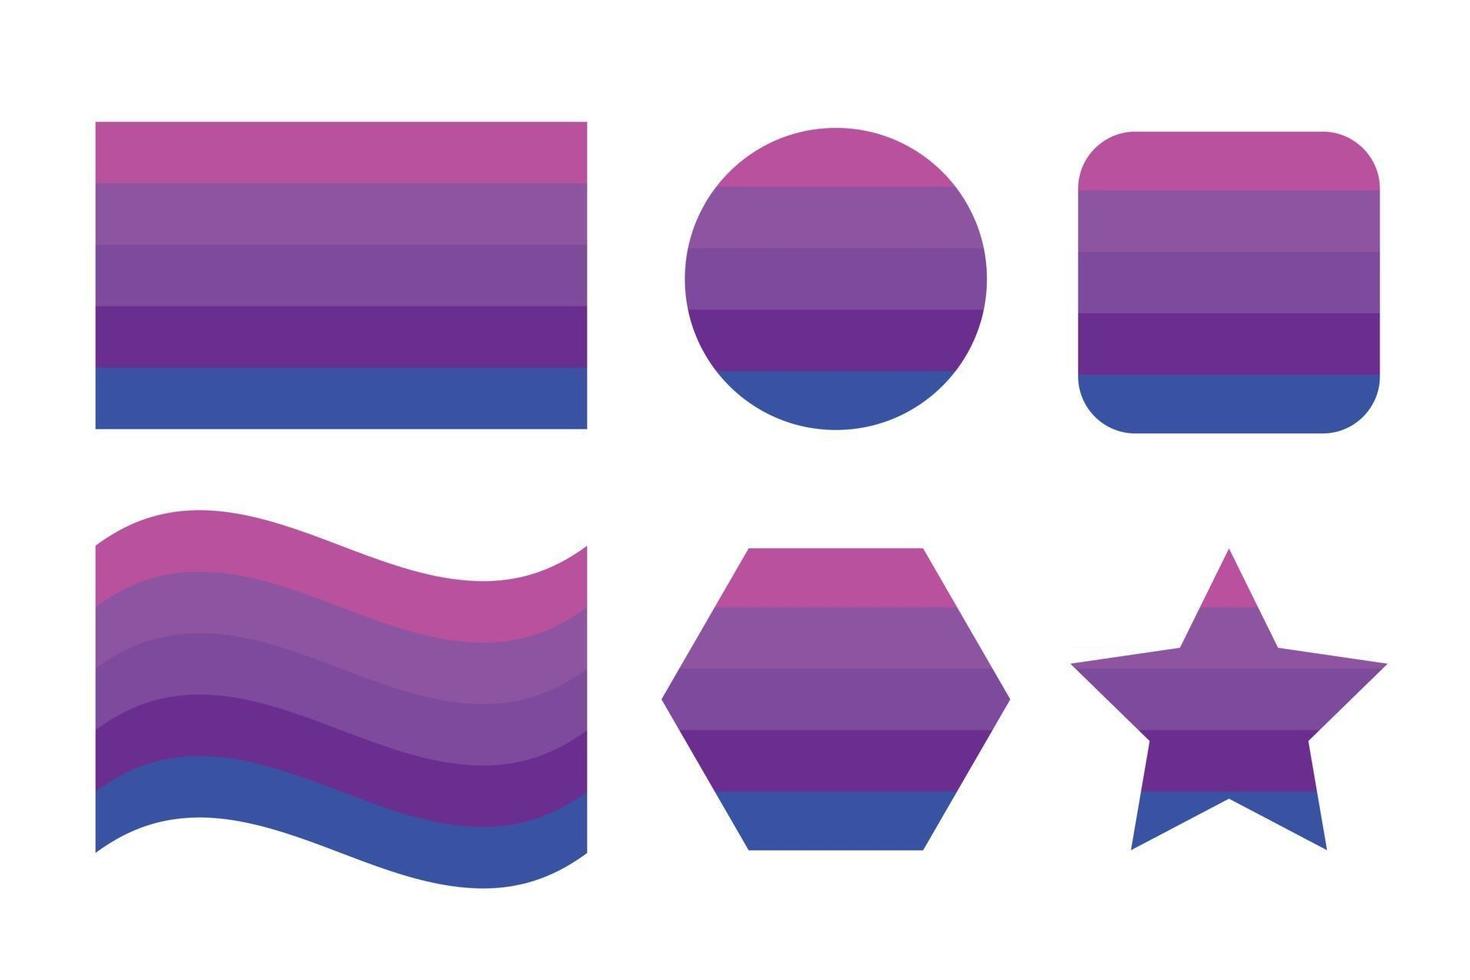 drapeau de fierté transgenre alternatif drapeau de fierté d'identité sexuelle vecteur